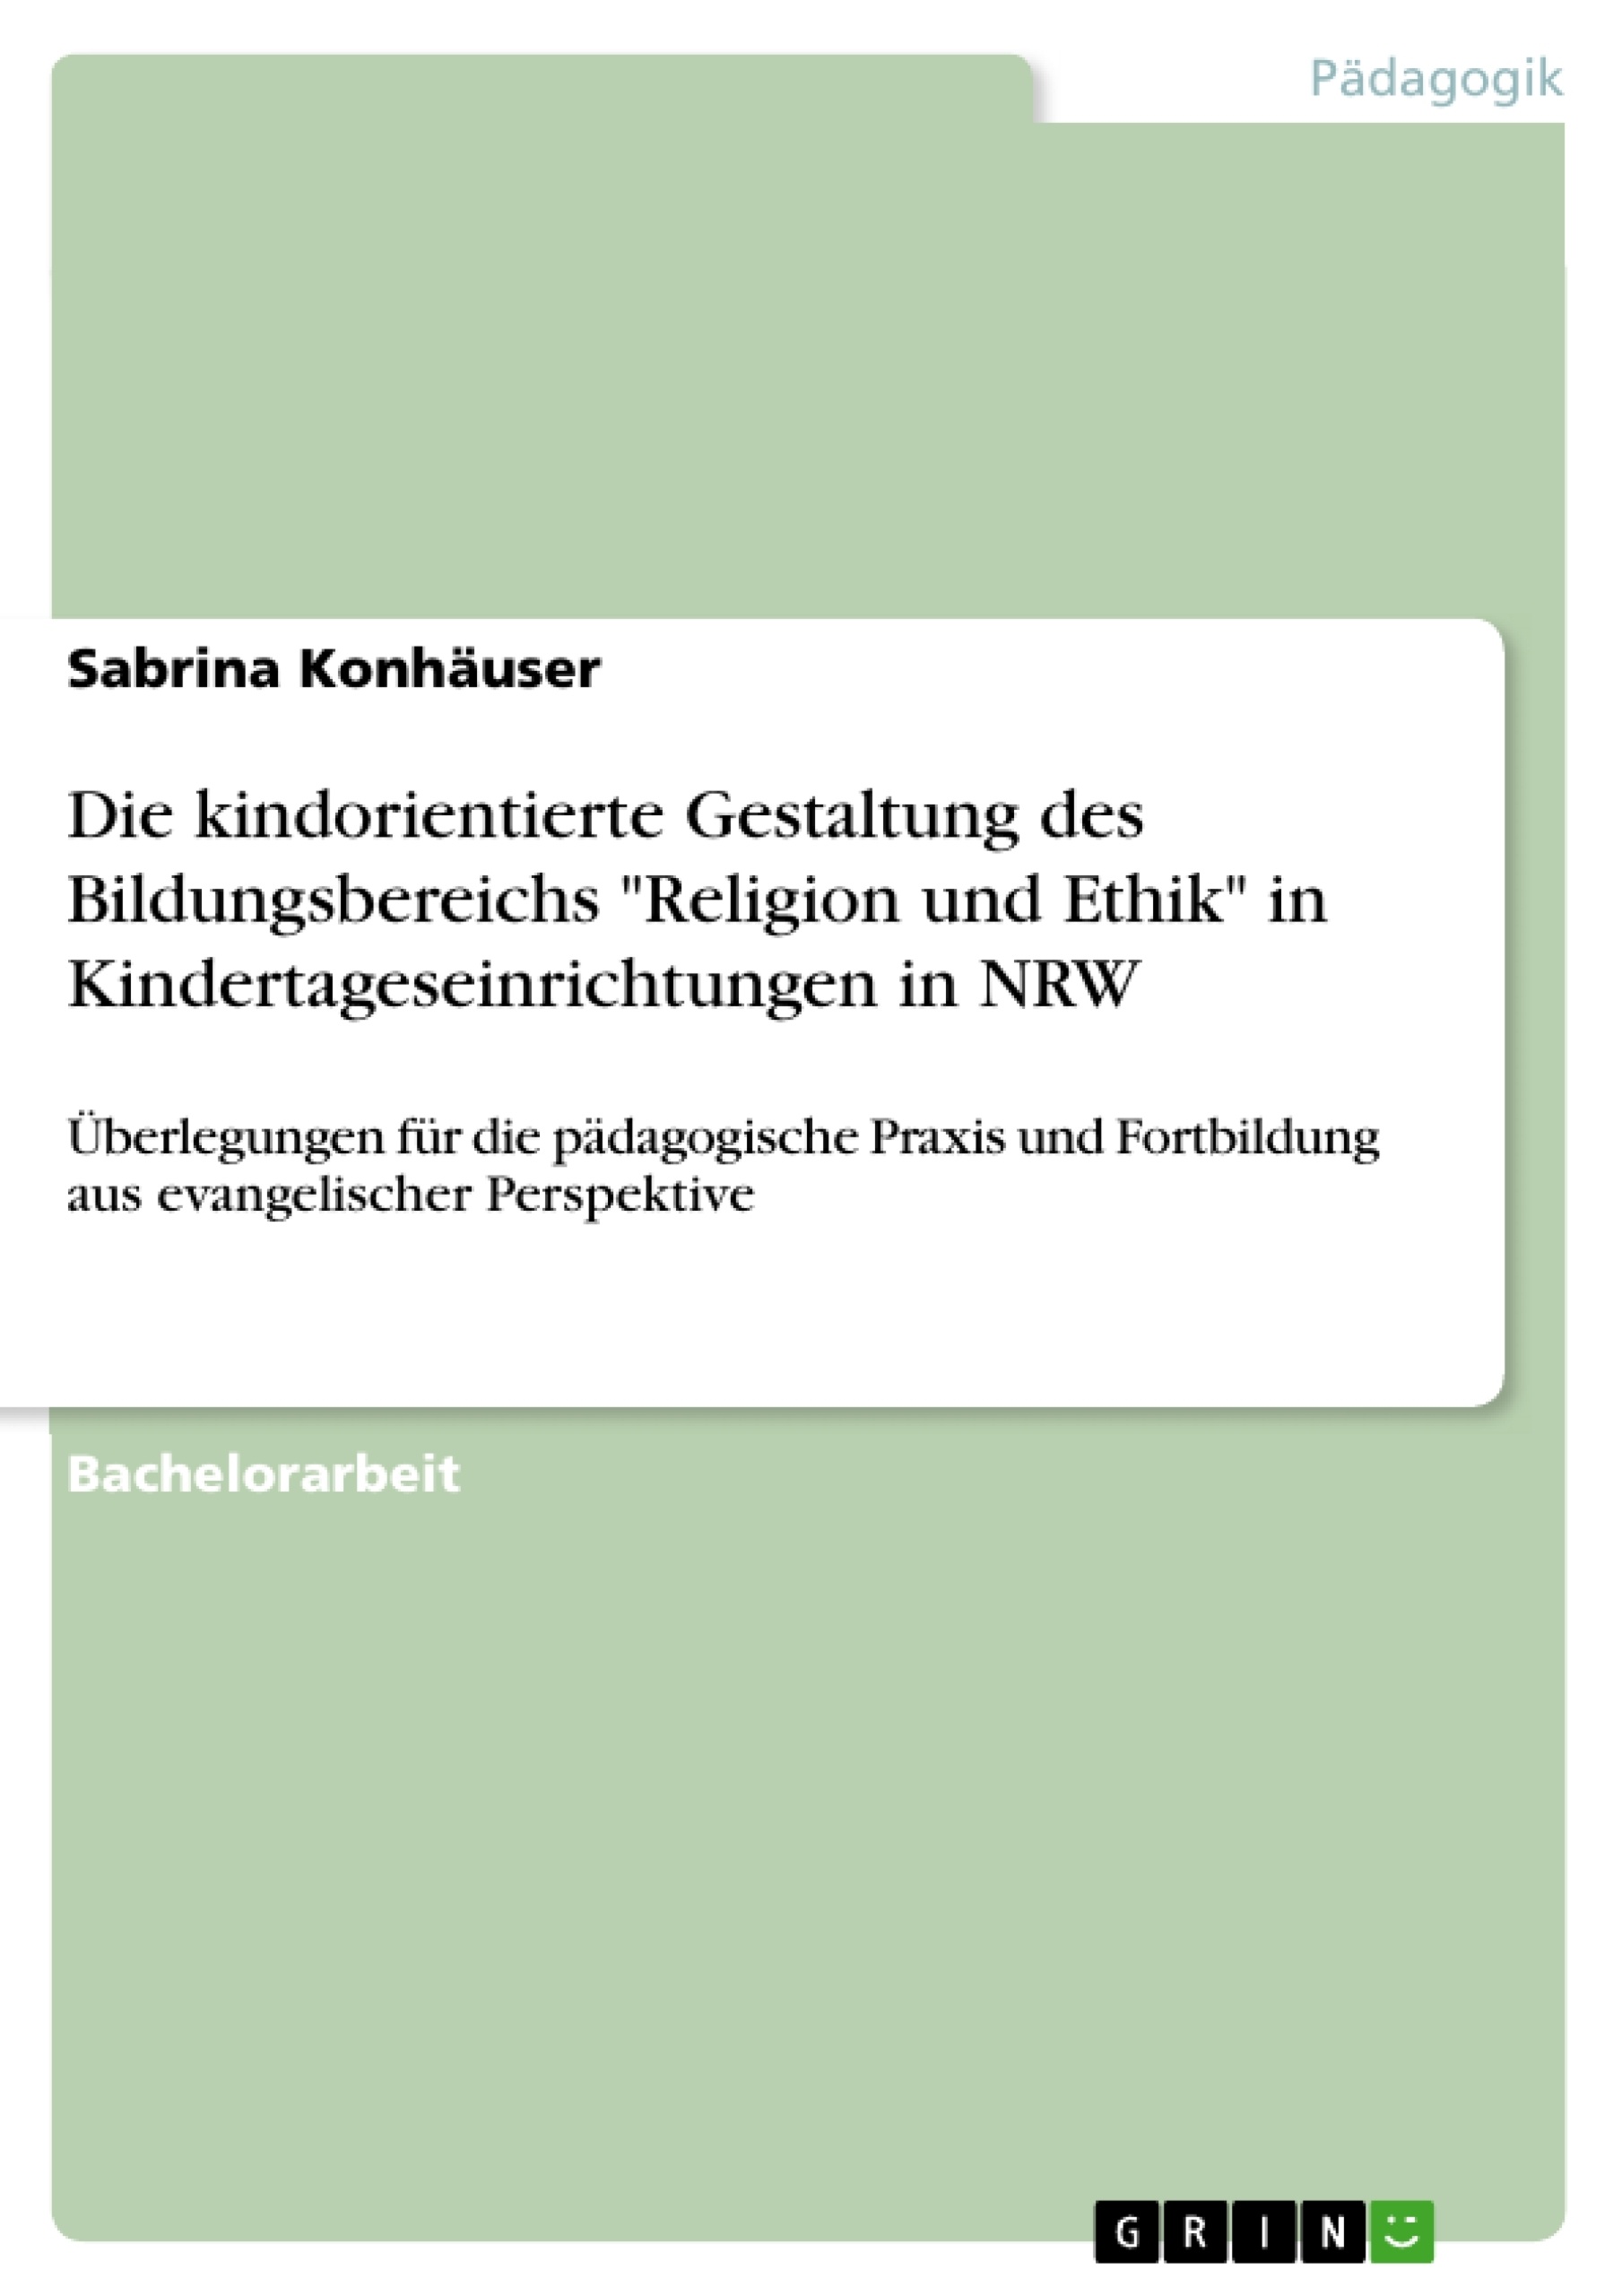 Título: Die kindorientierte Gestaltung des Bildungsbereichs "Religion und Ethik" in Kindertageseinrichtungen in NRW